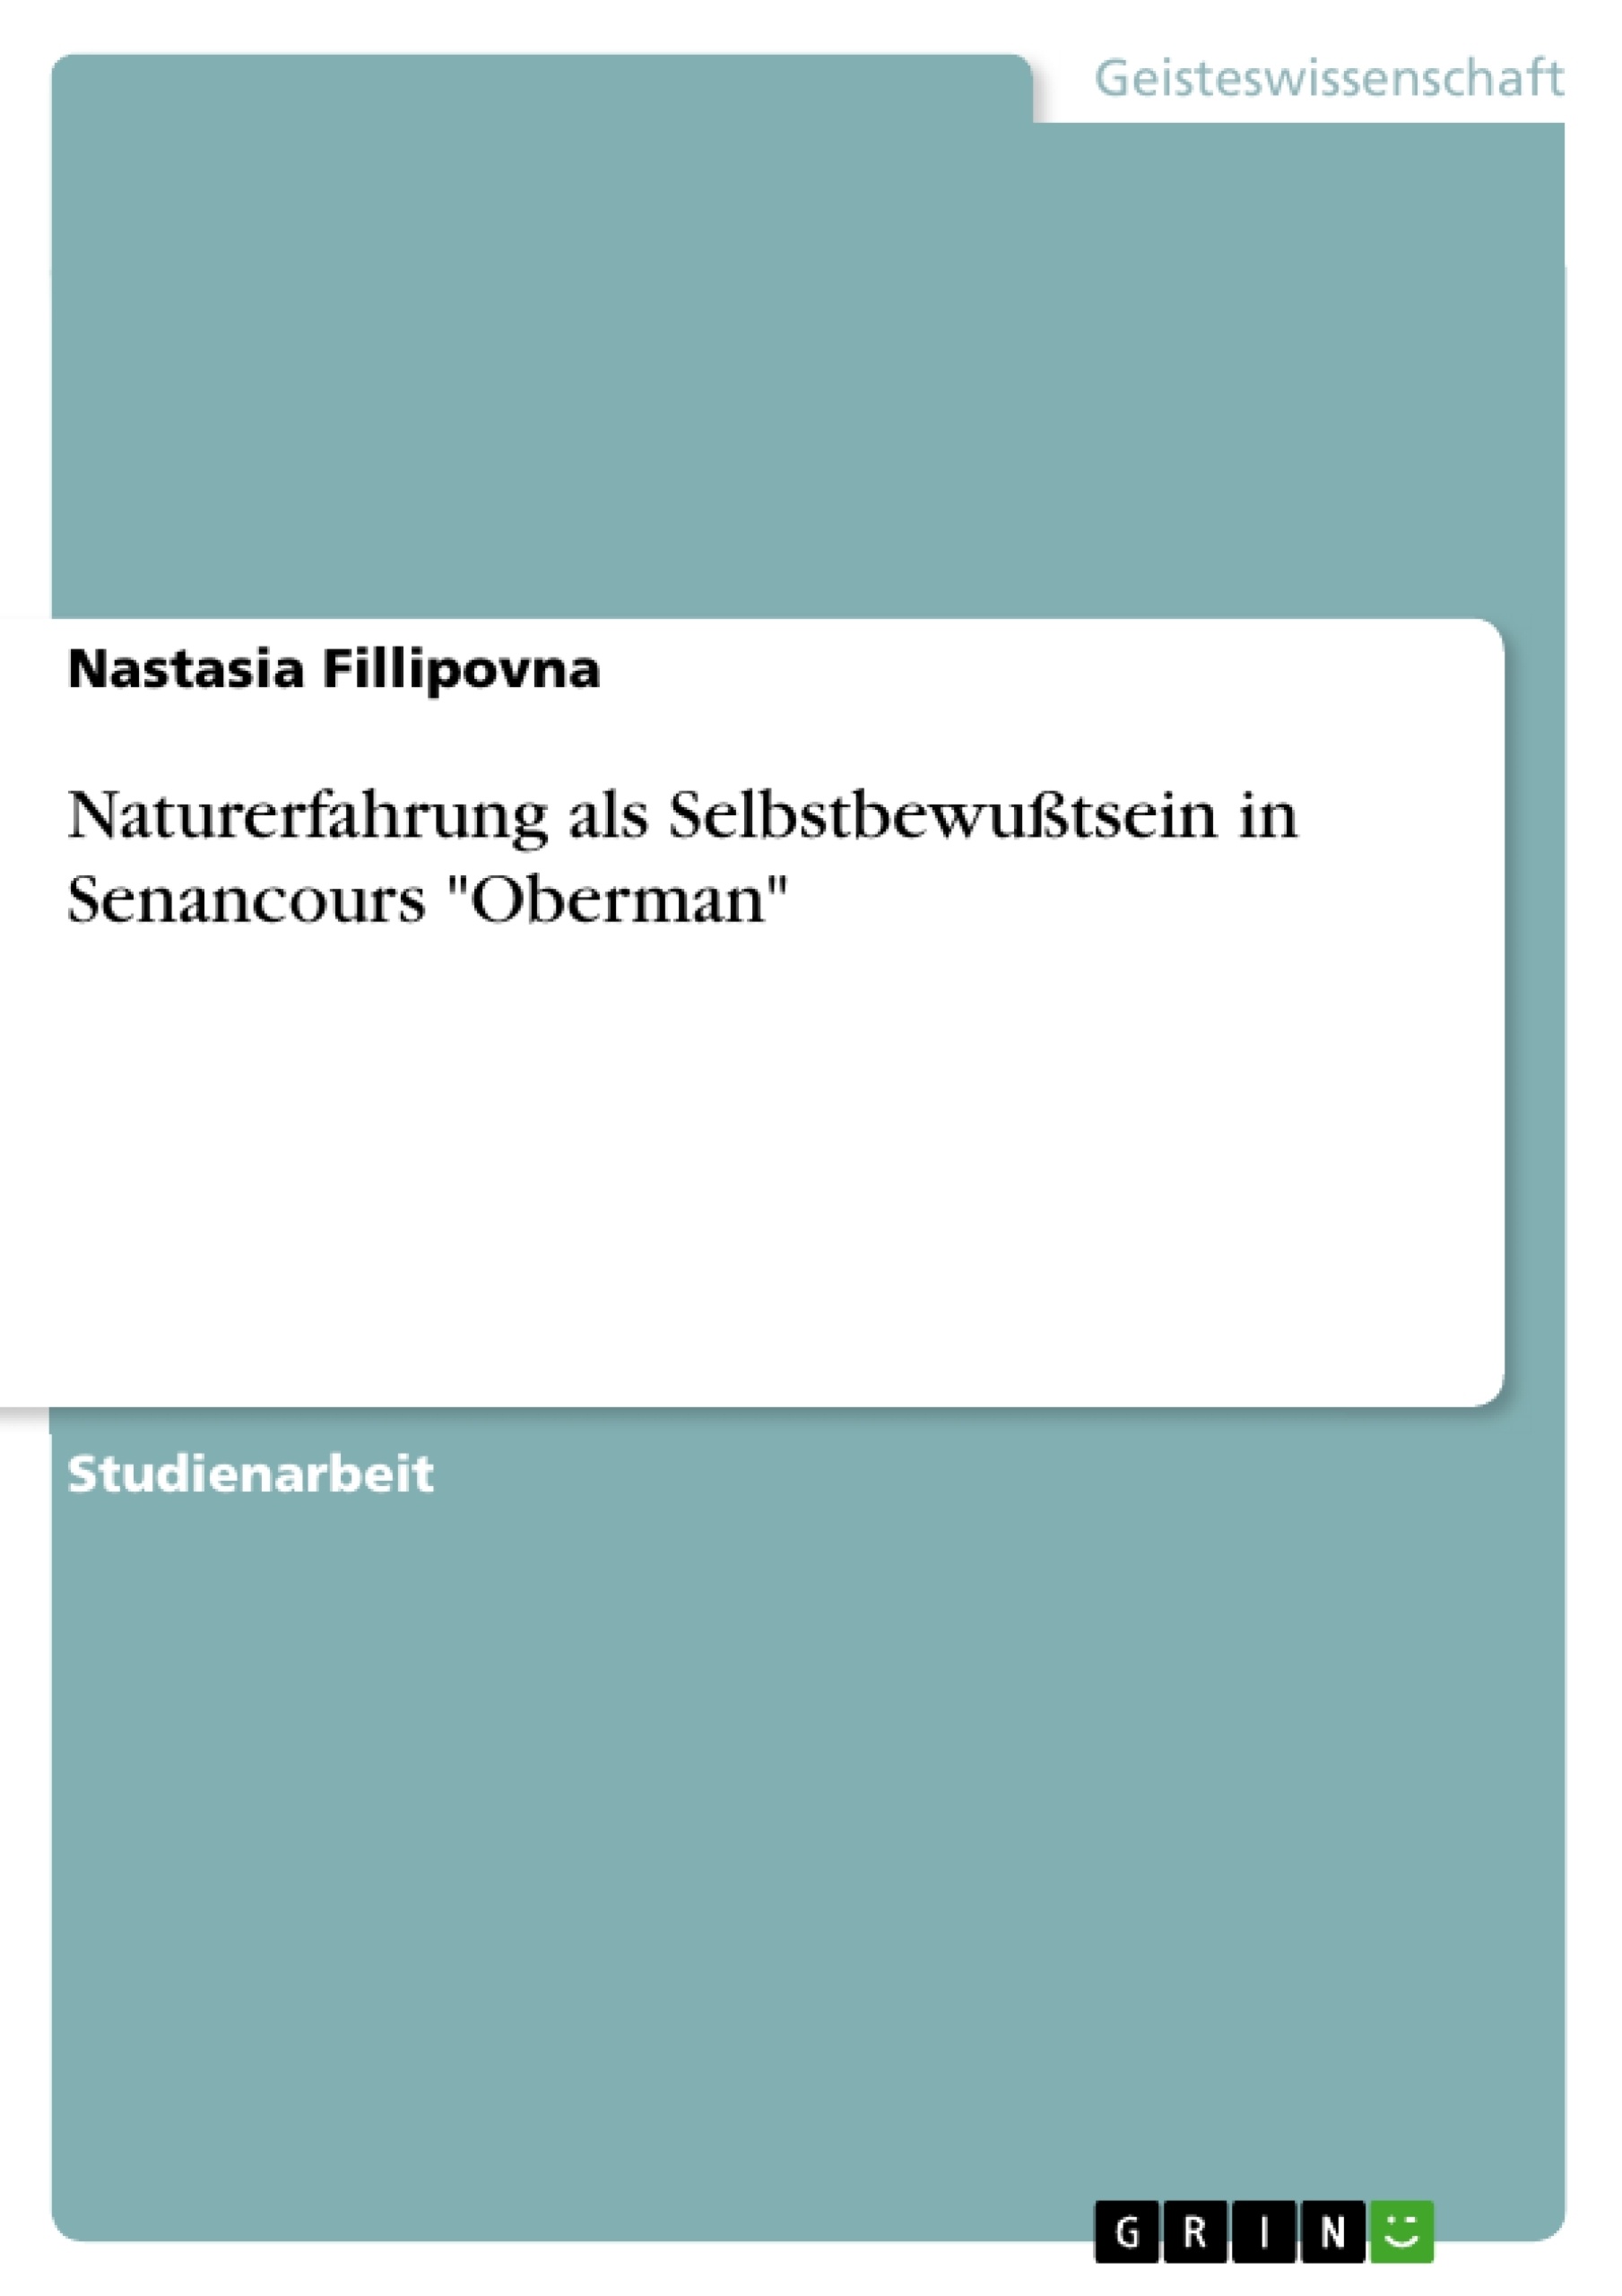 Título: Naturerfahrung als Selbstbewußtsein in Senancours "Oberman"